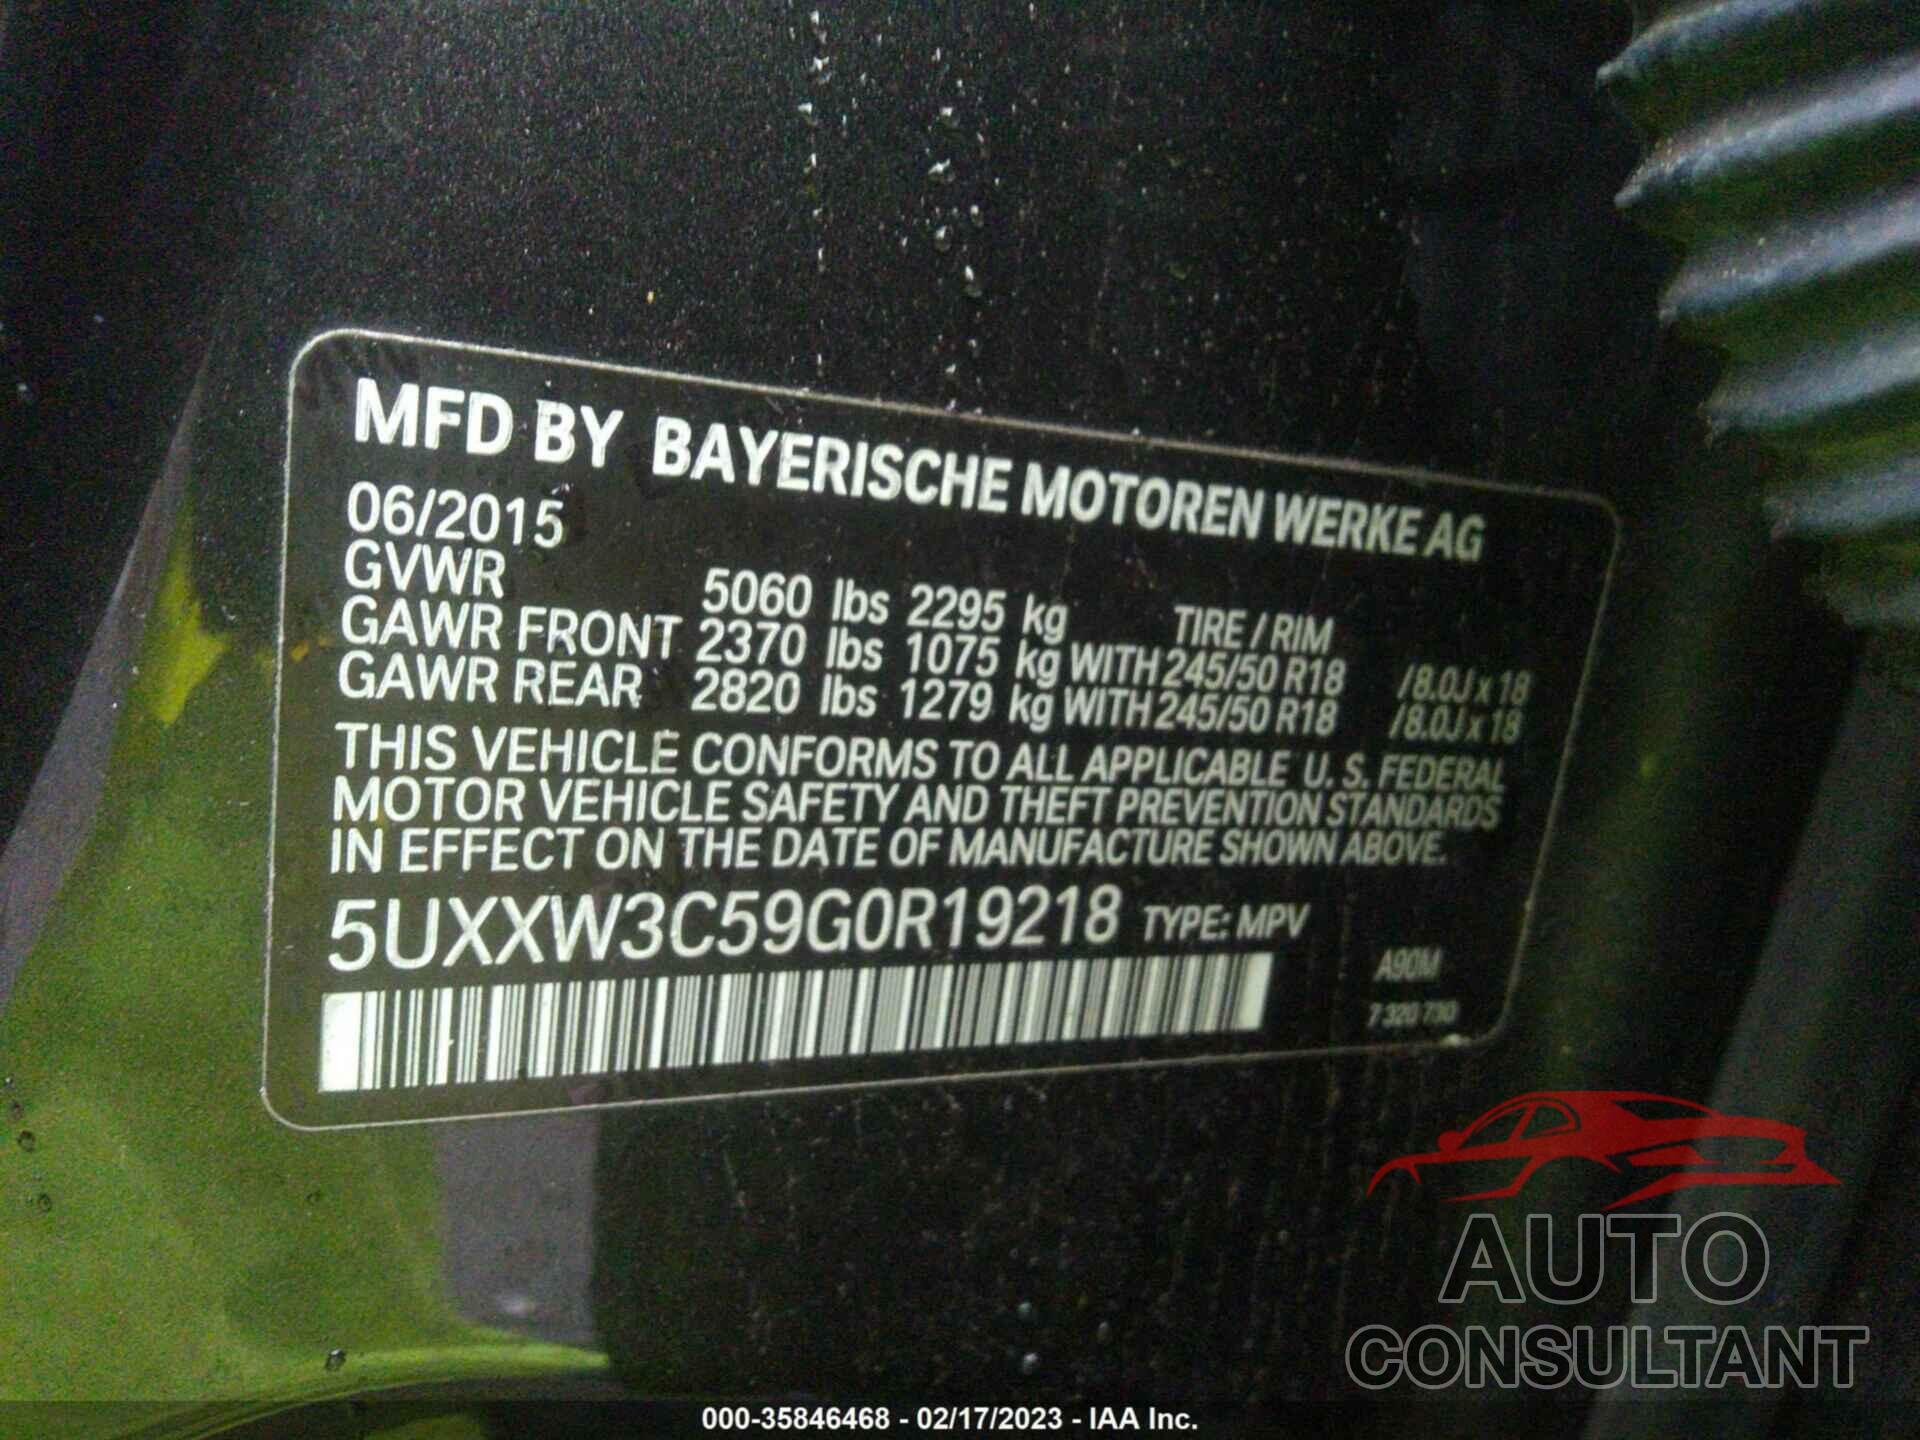 BMW X4 2016 - 5UXXW3C59G0R19218